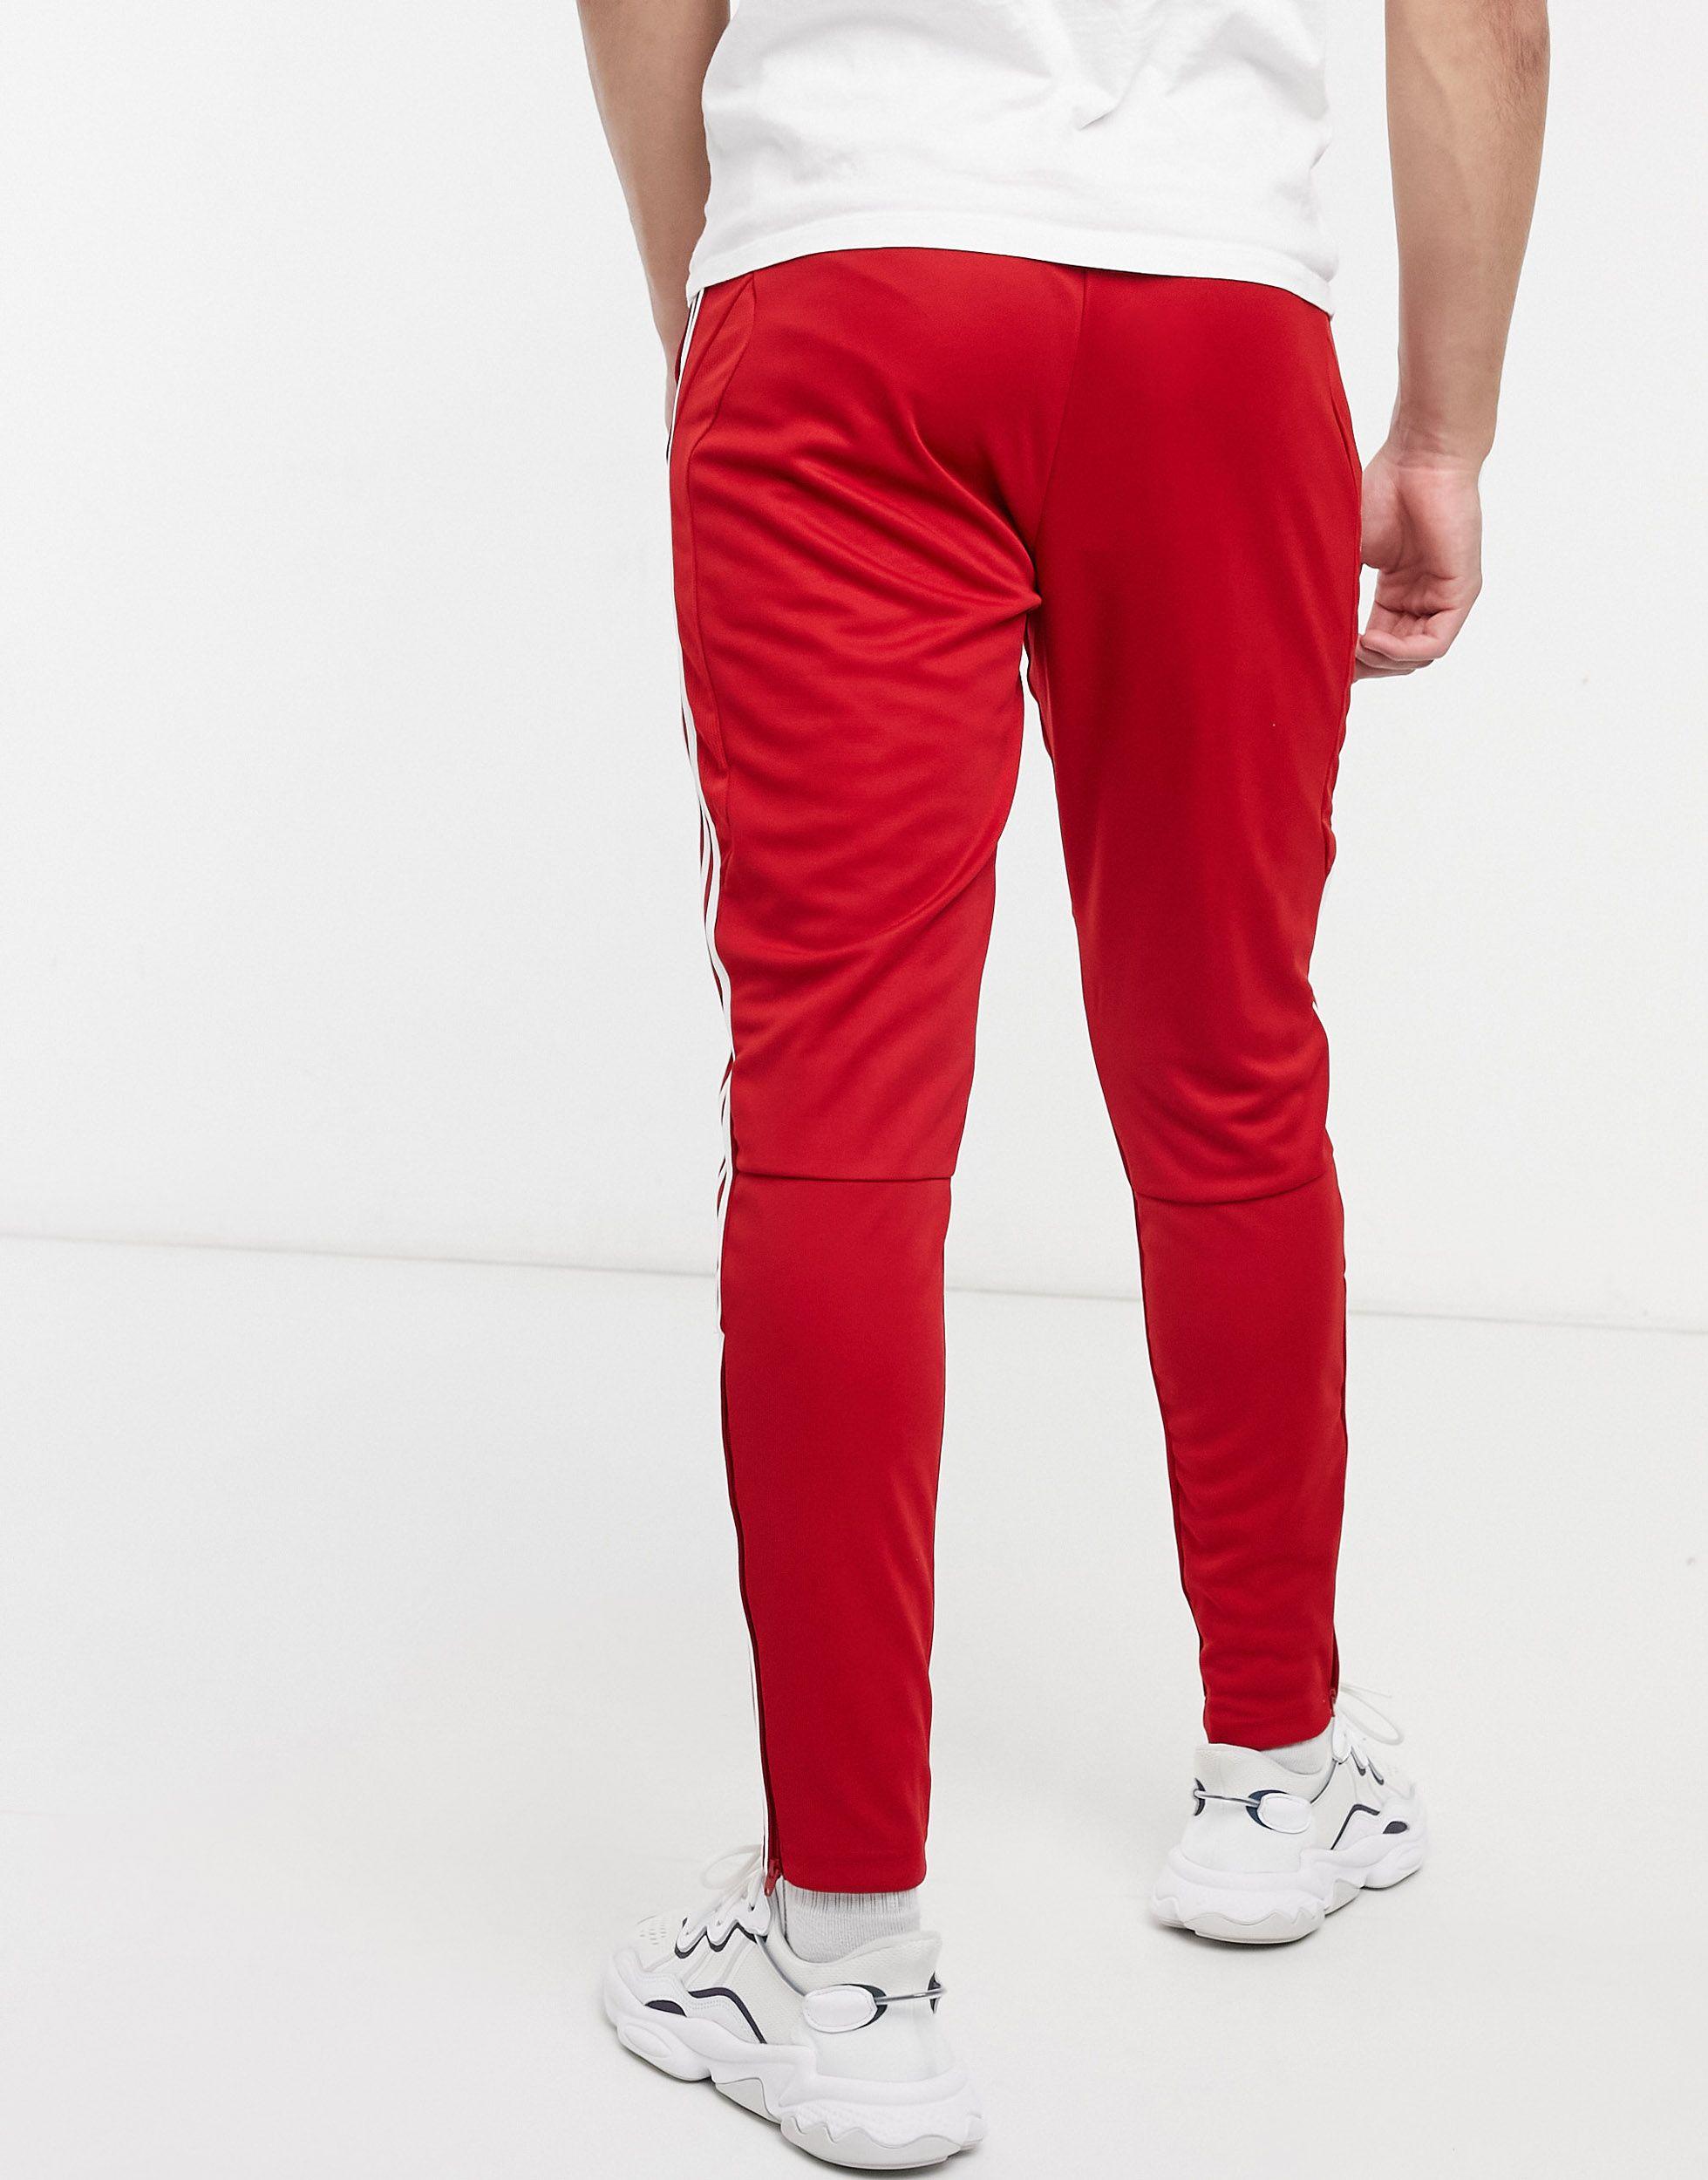 adidas Originals Adidas Tiro 3 Stripe Sweatpants in Red for Men - Lyst